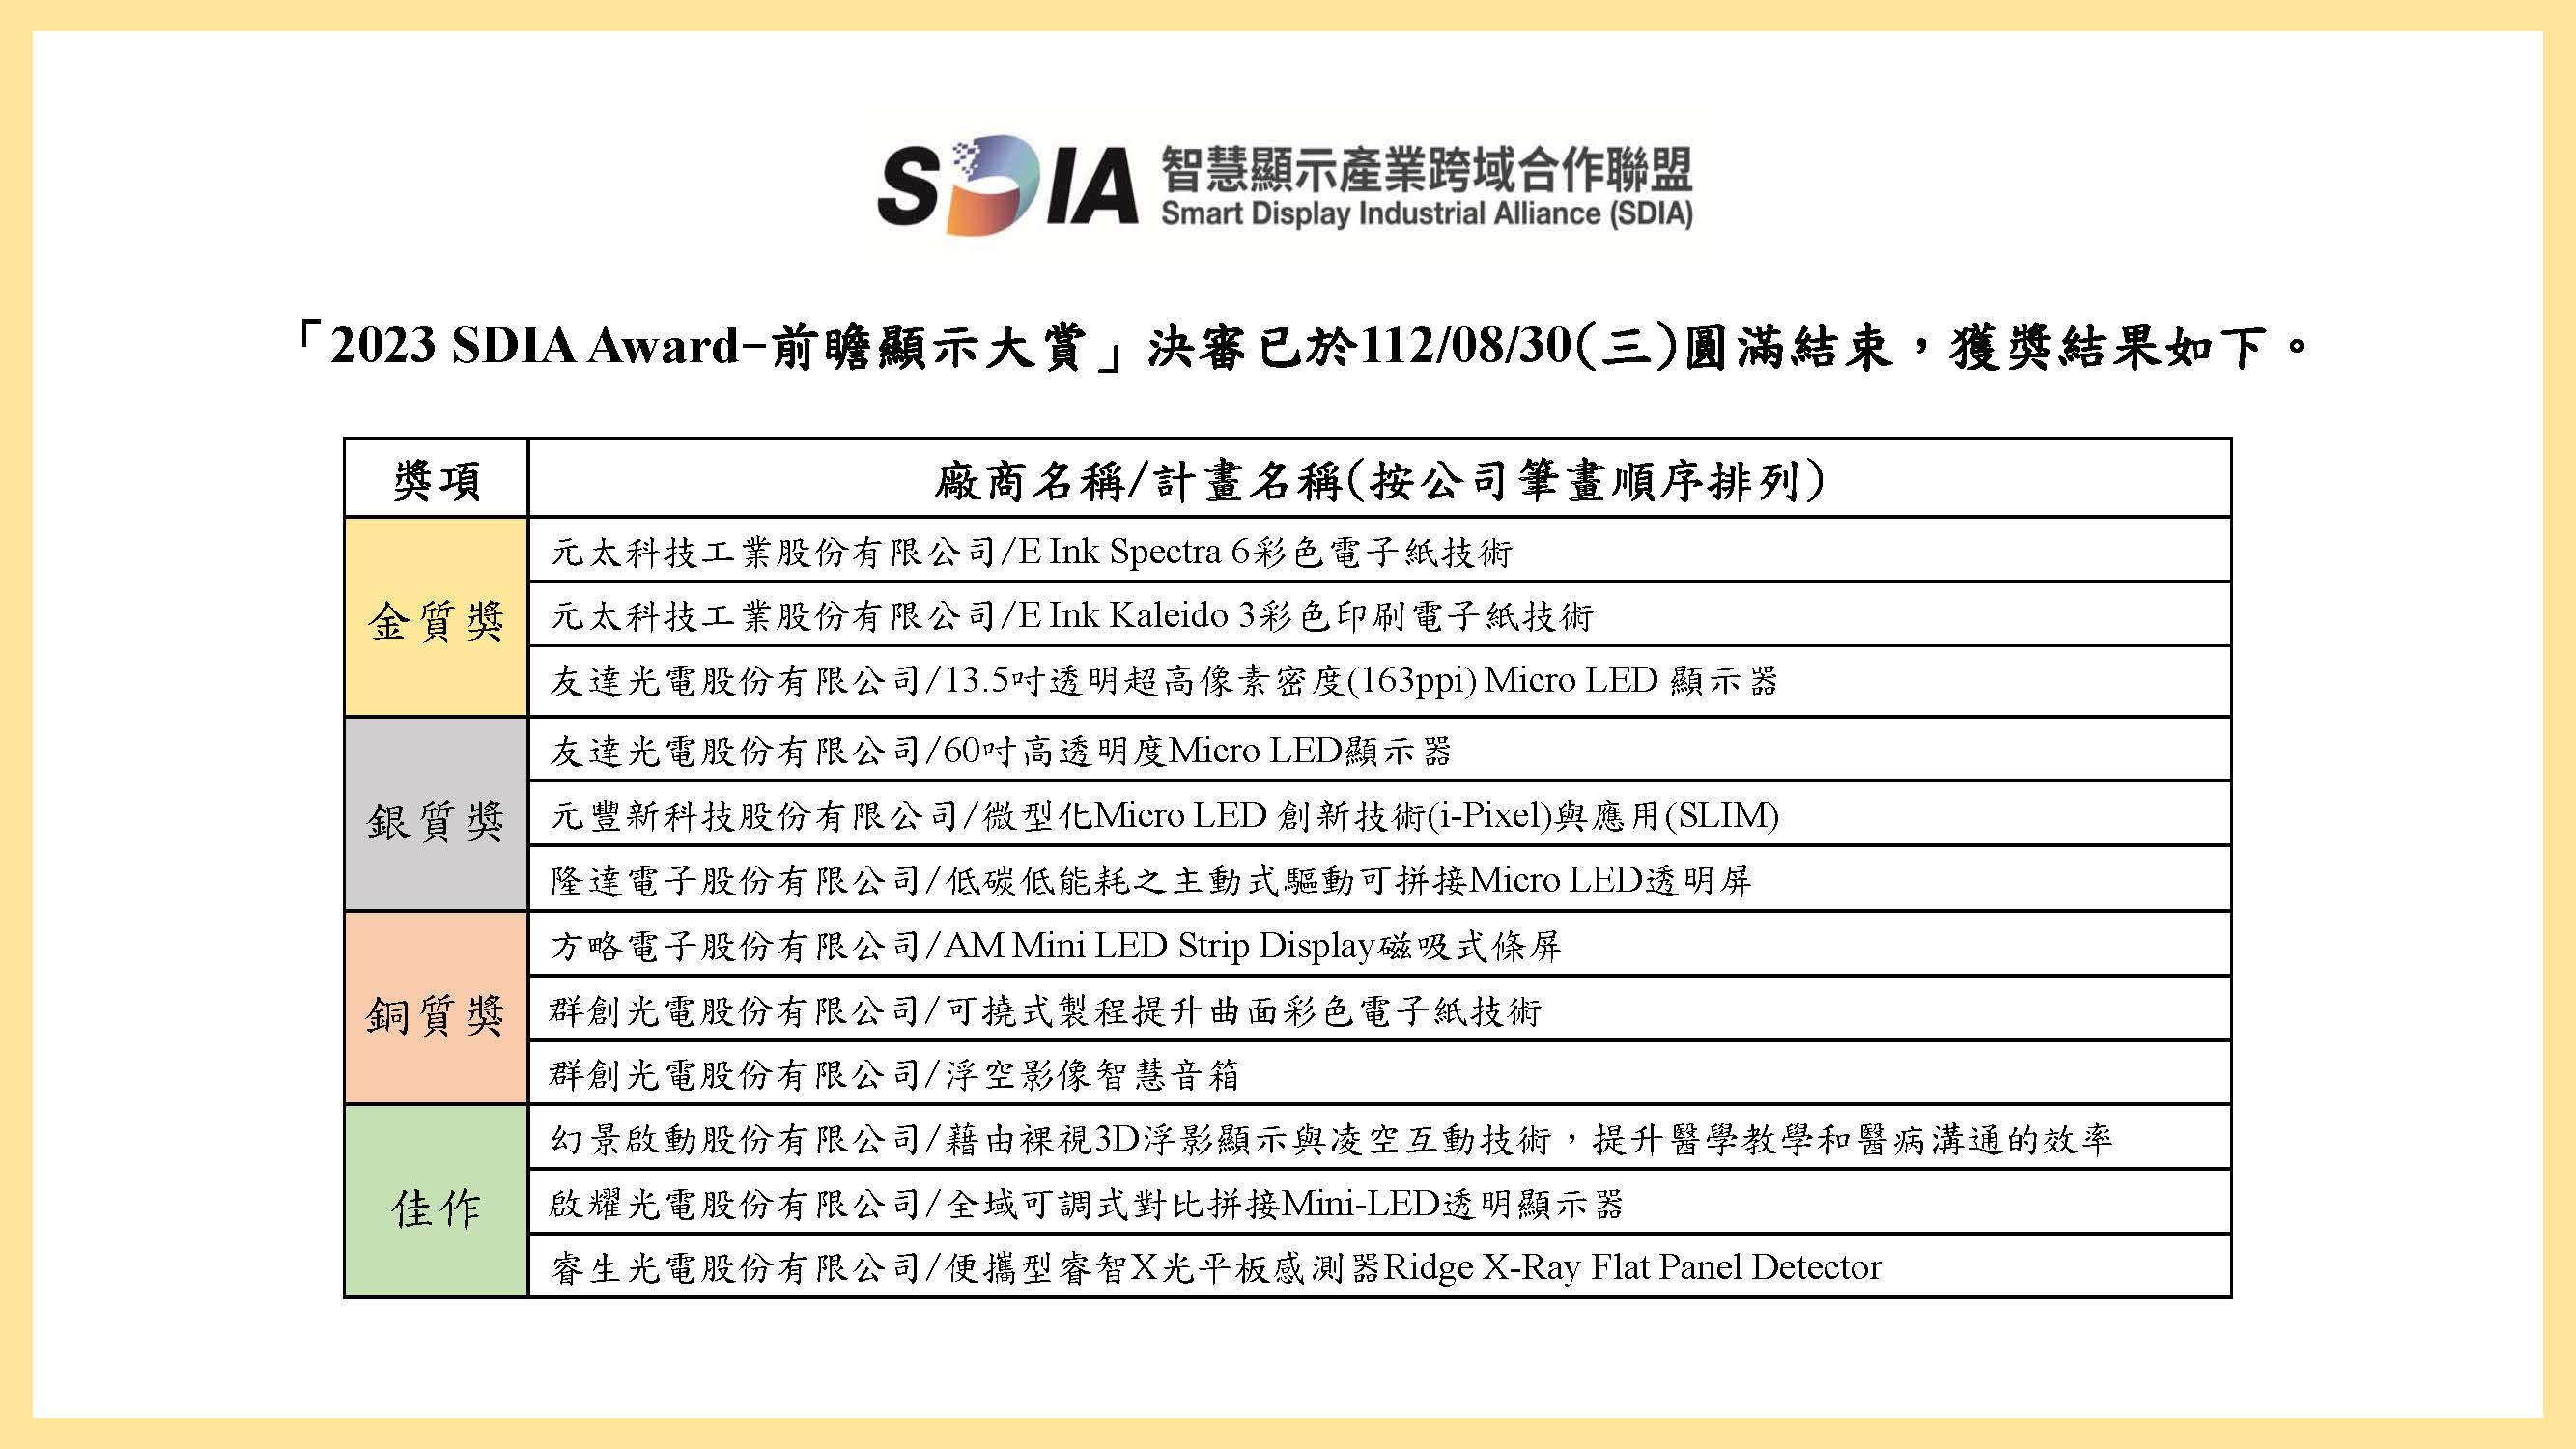 「2023 SDIA Award-前瞻顯示大賞決審結果」